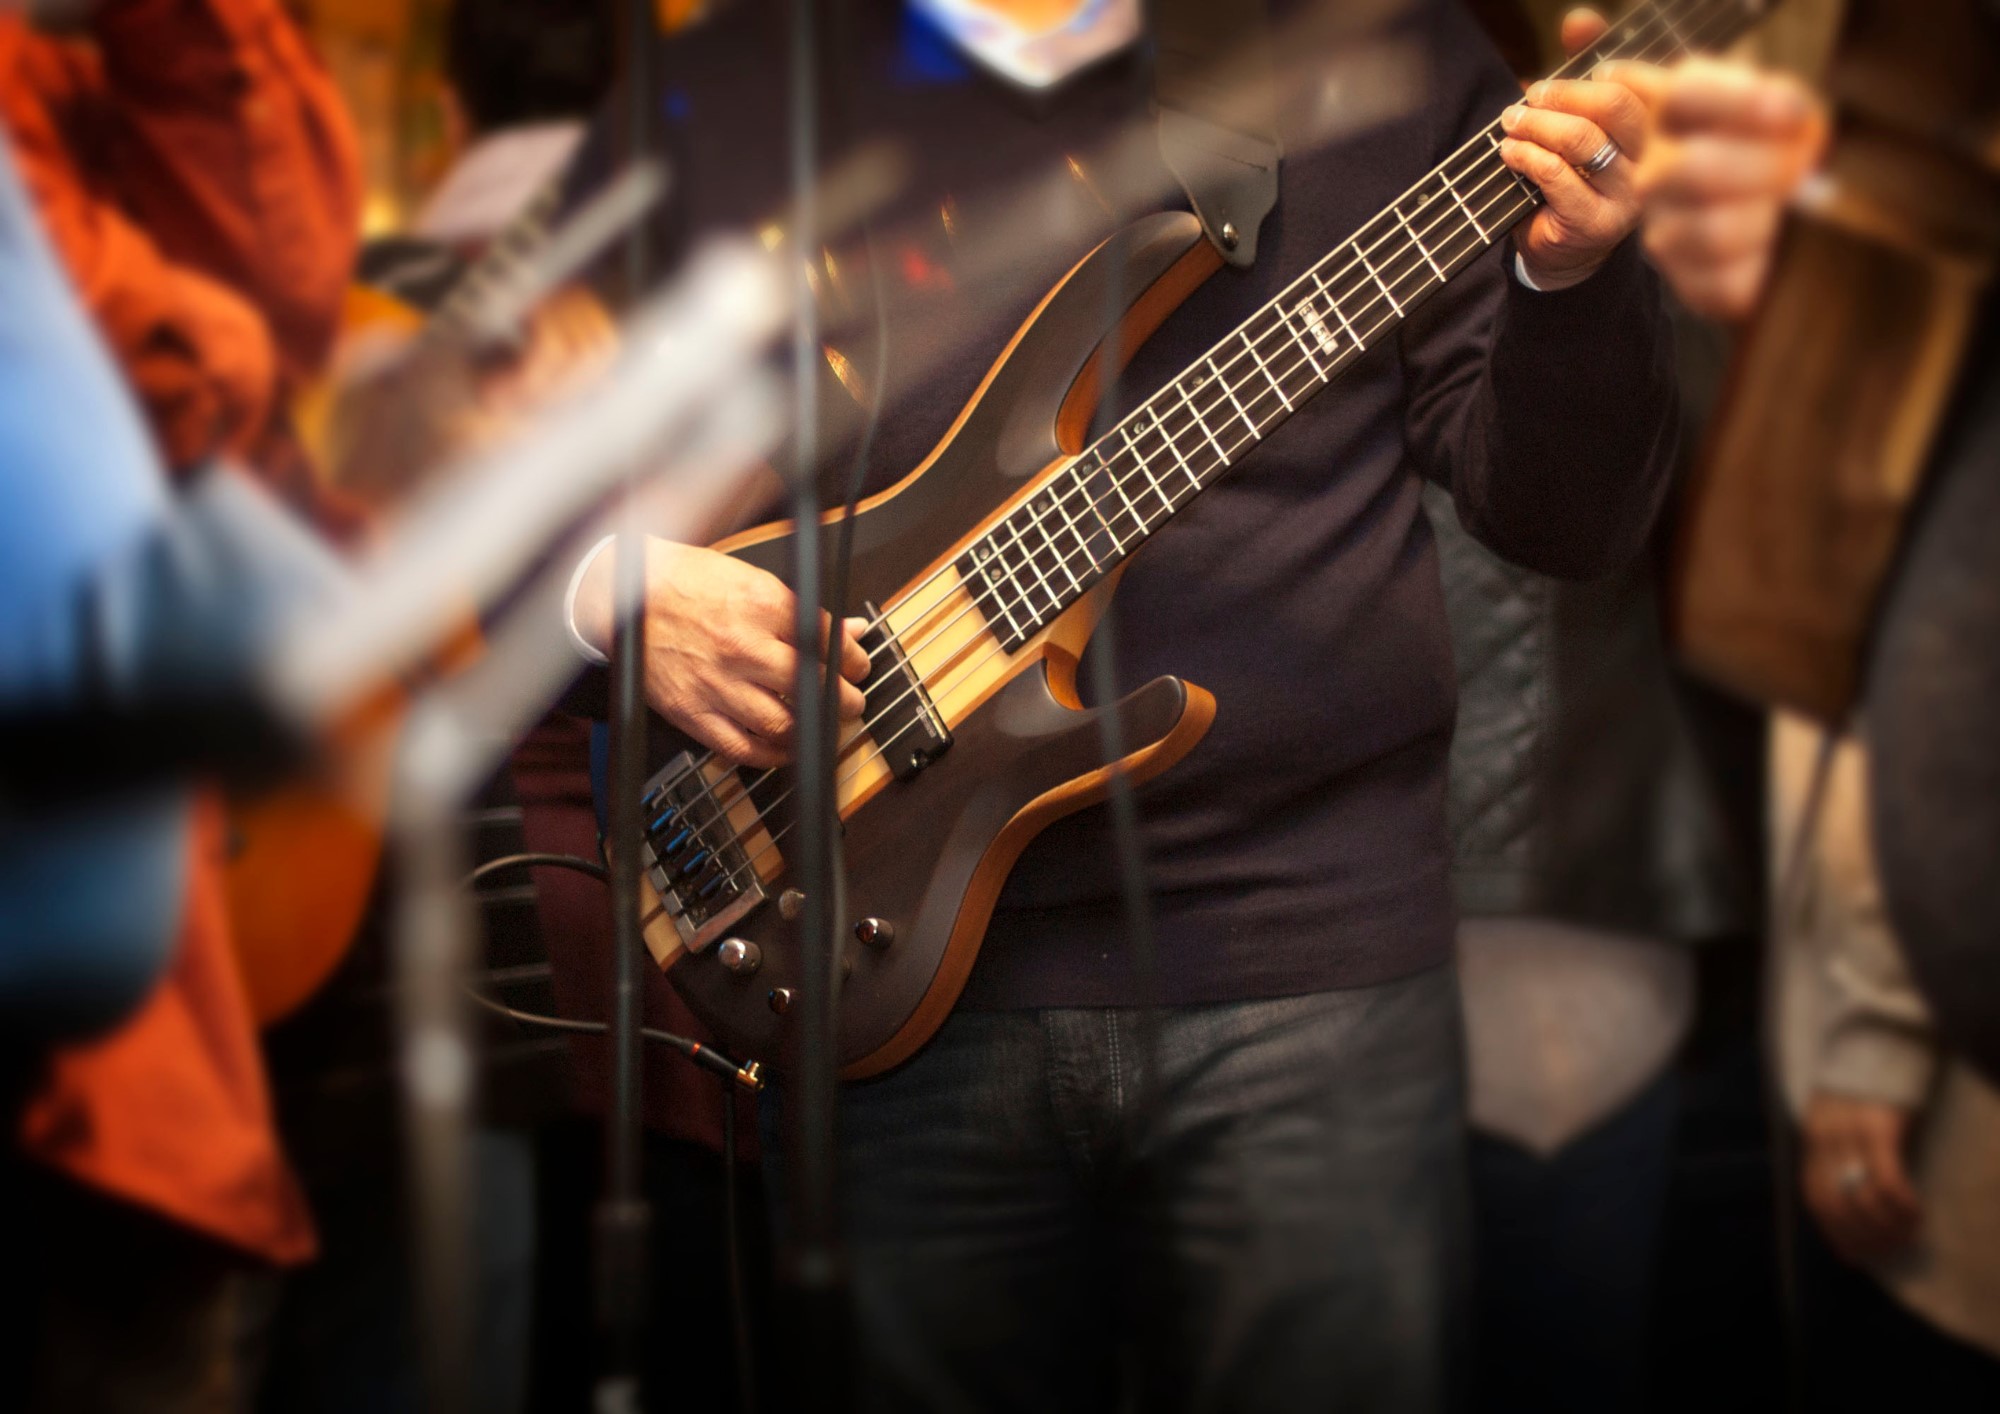 Kuvassa on muusikko bassokitara kädessä, jota hän soittaa